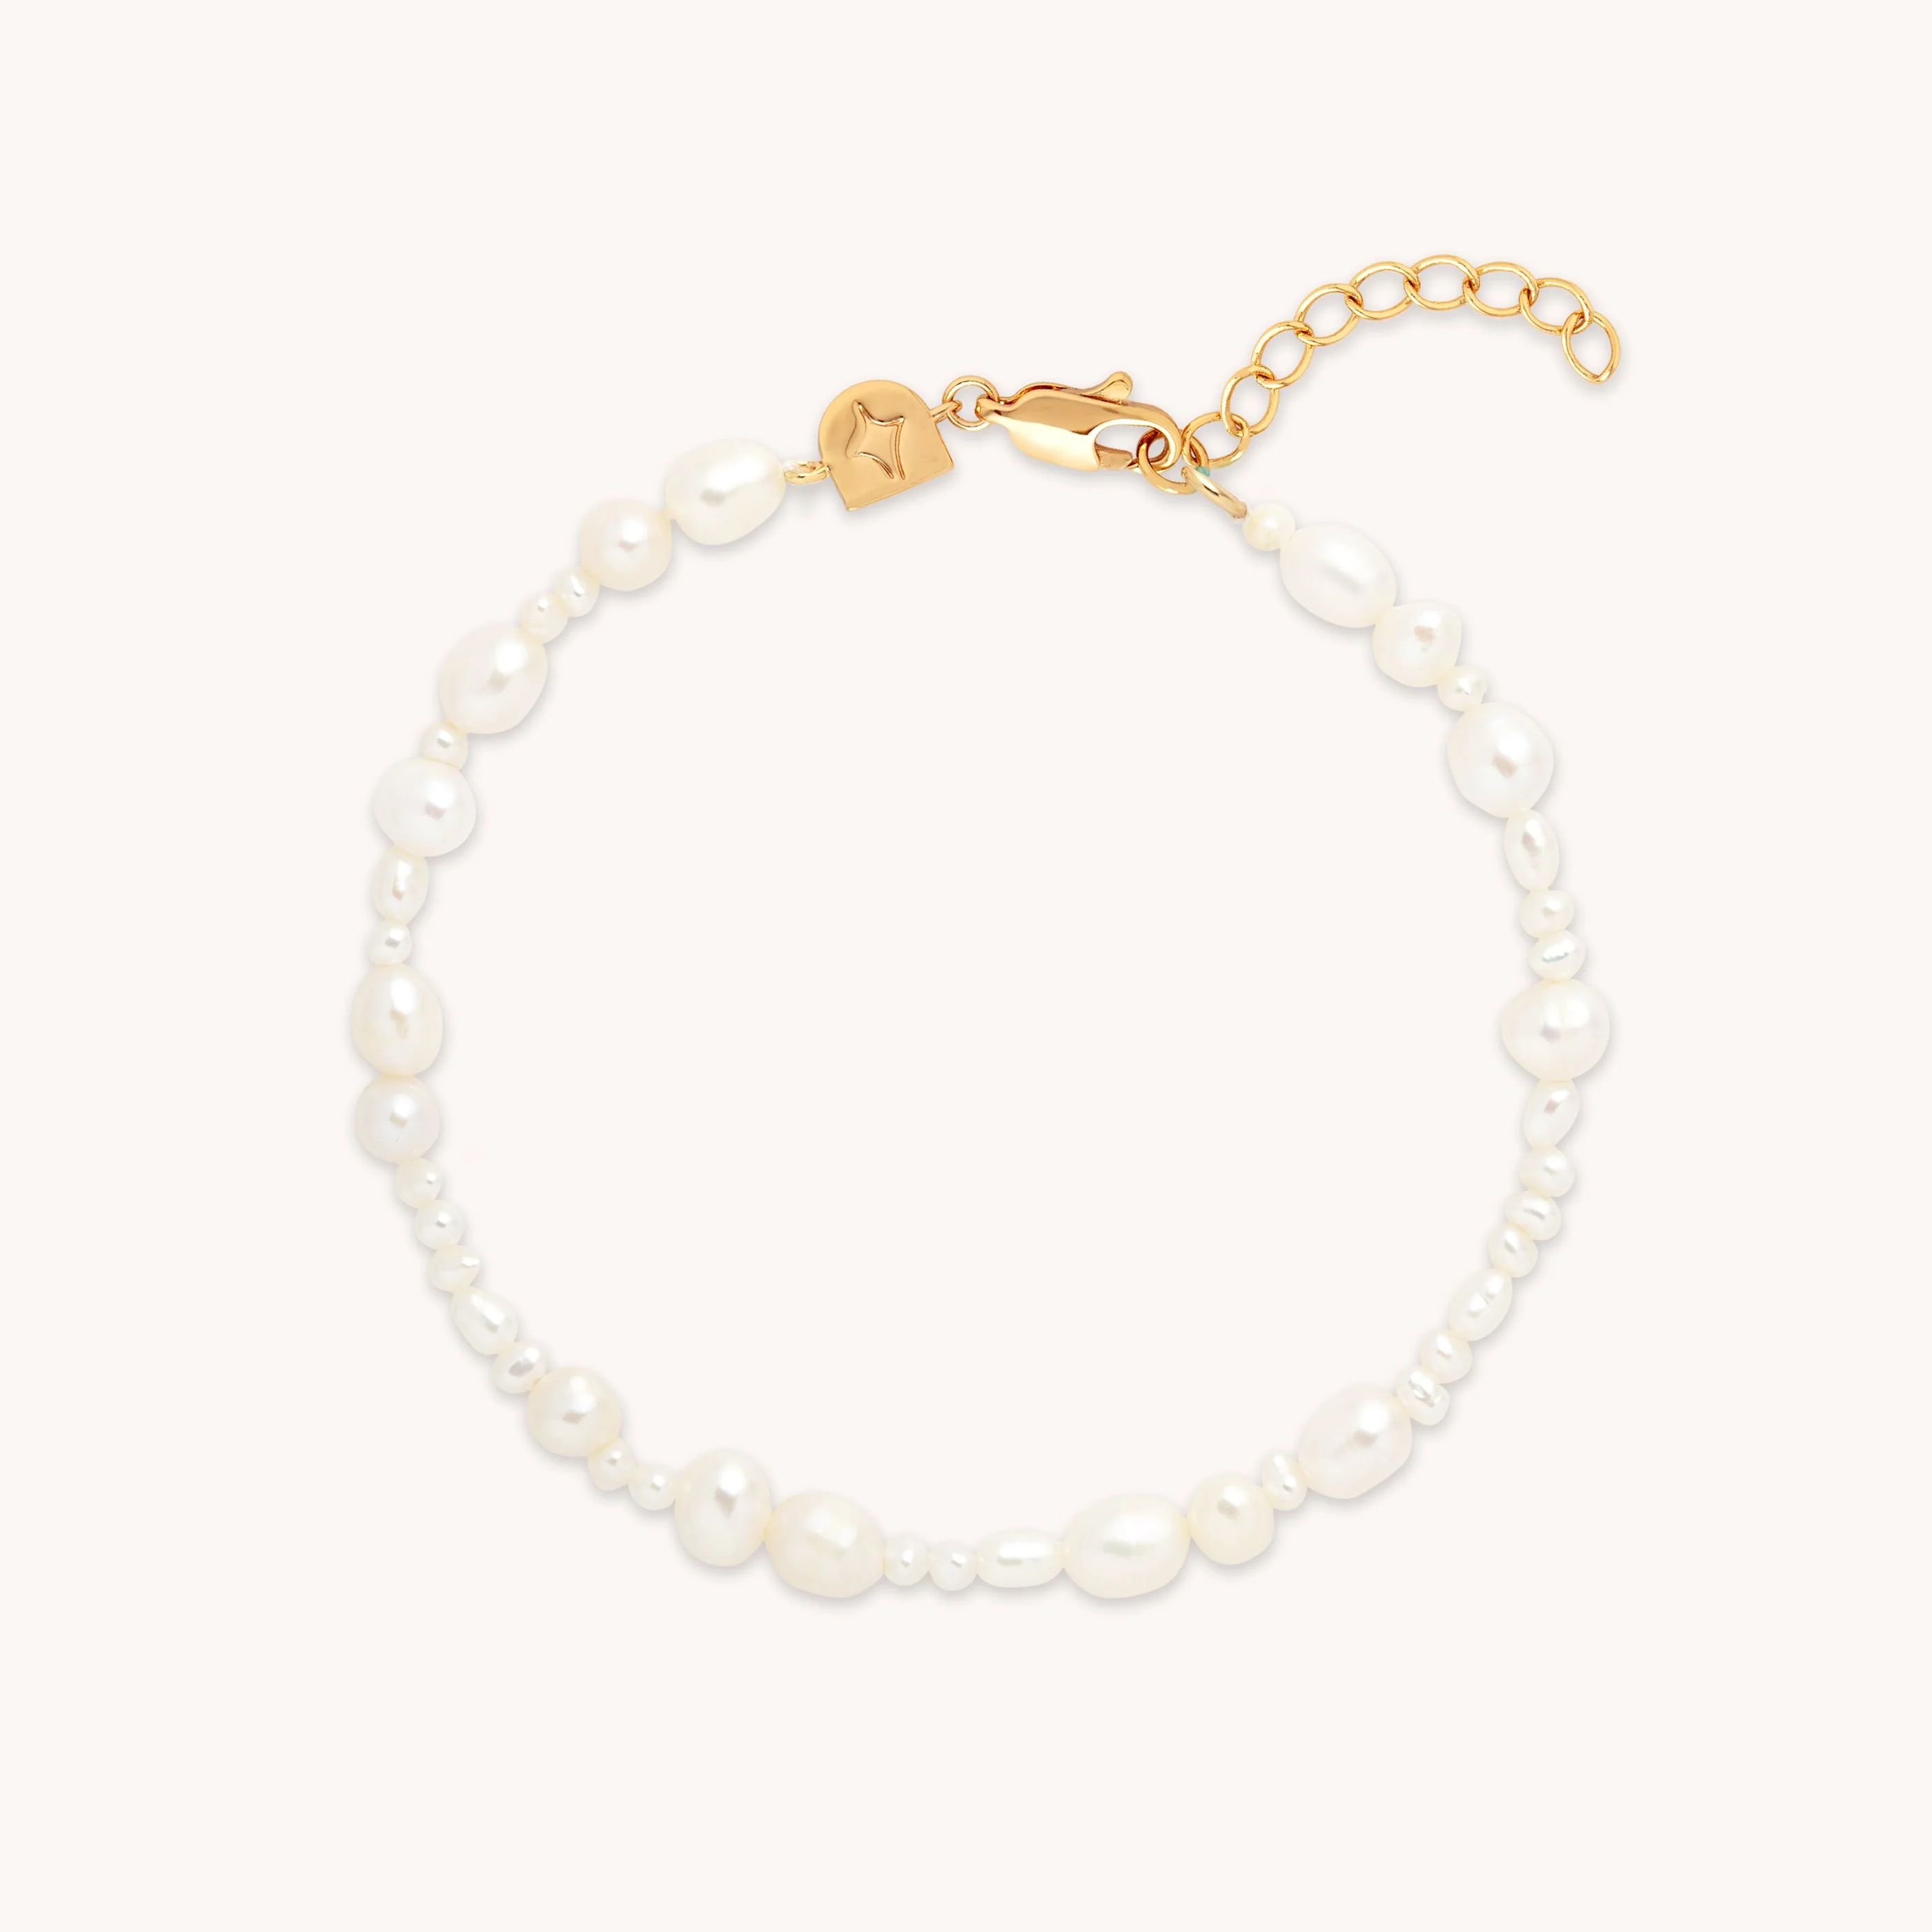 Serenity Gold Pearl Beaded Bracelet | Astrid & Miyu Bracelets | Astrid & Miyu US